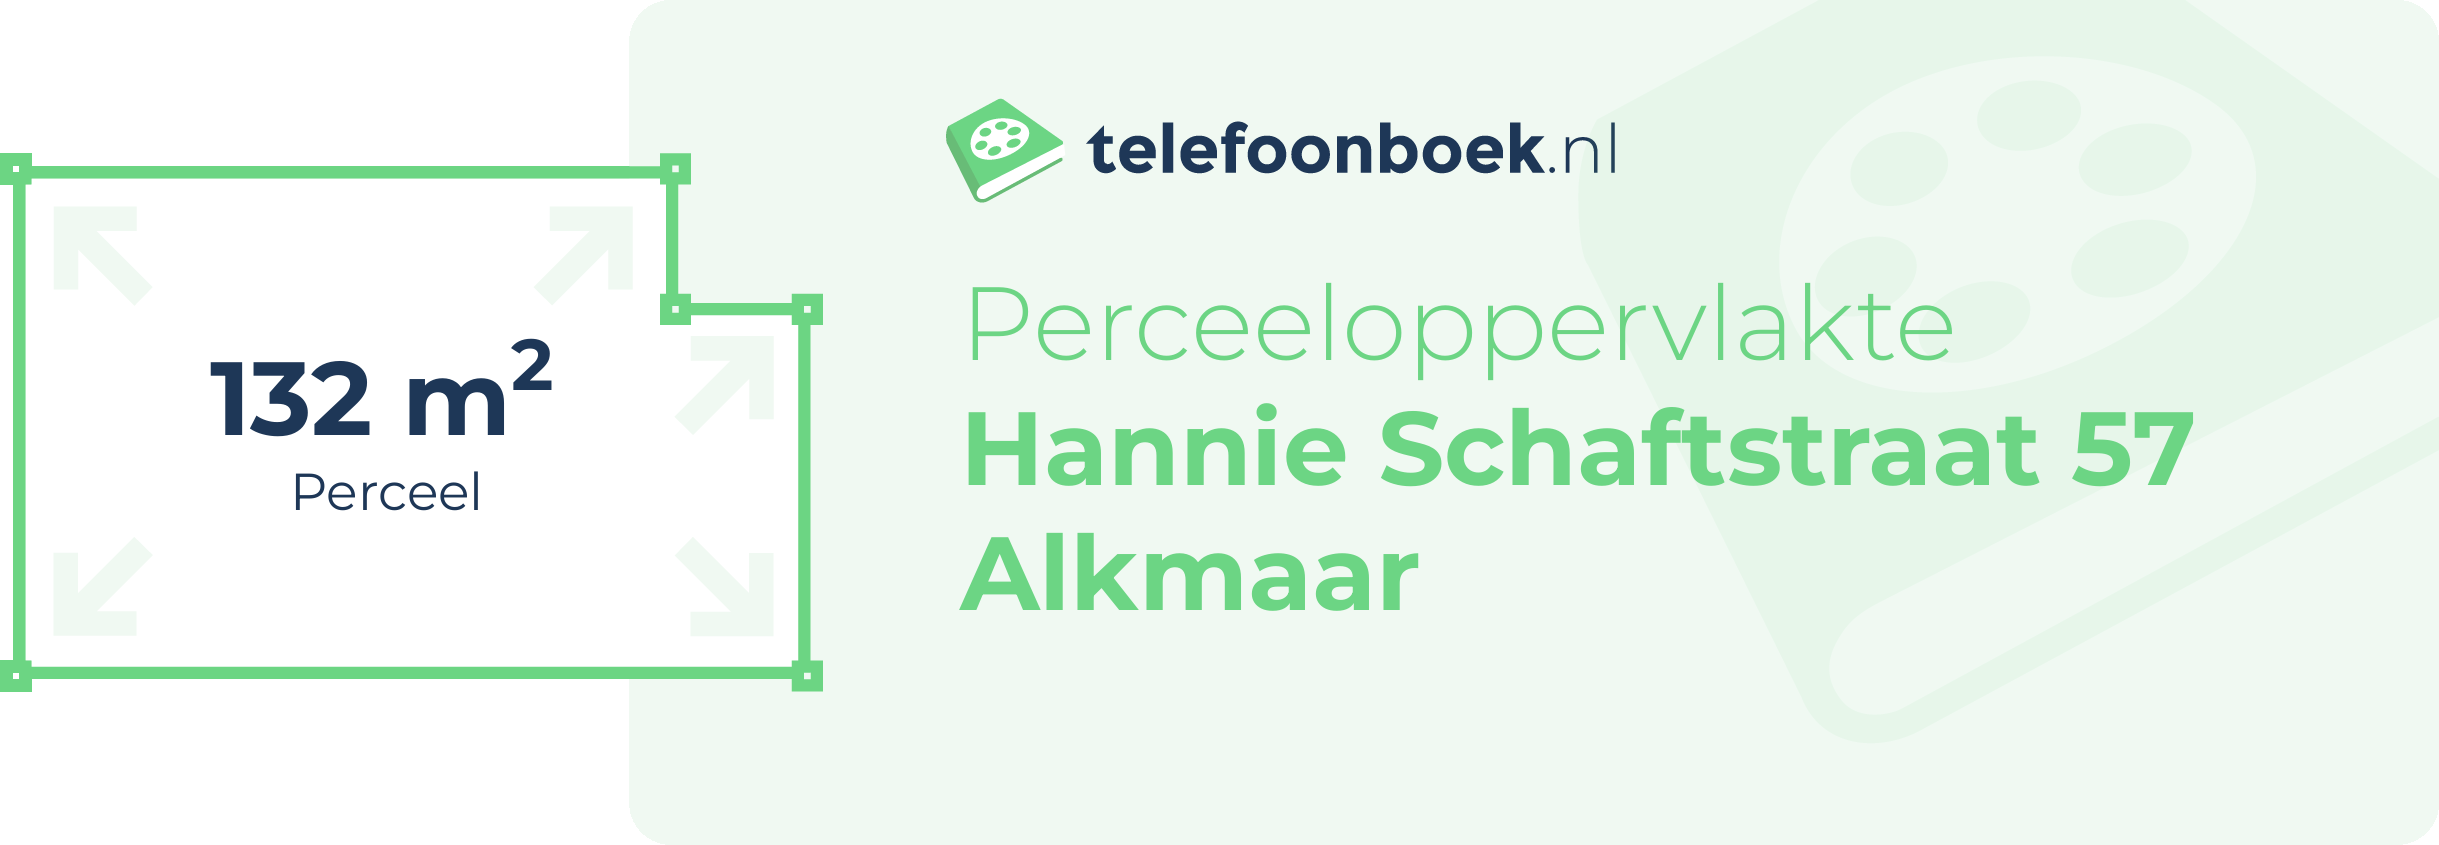 Perceeloppervlakte Hannie Schaftstraat 57 Alkmaar